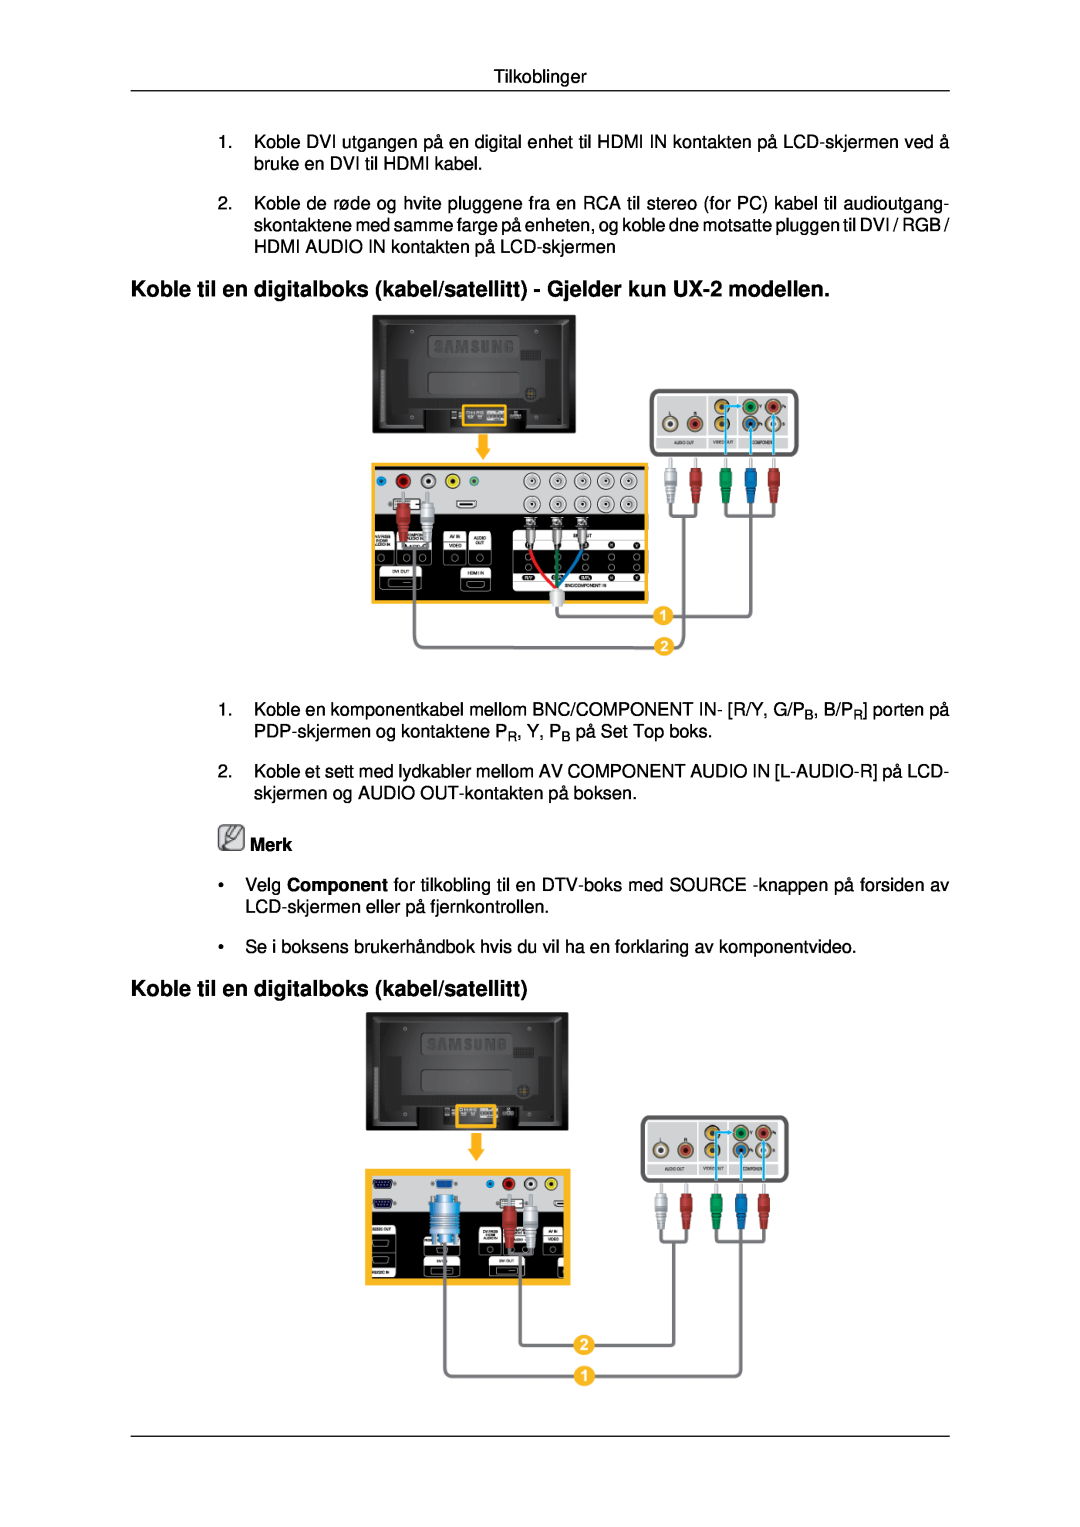 Samsung LH46MRTLBC/EN, LH46MRPLBF/EN manual Koble til en digitalboks kabel/satellitt - Gjelder kun UX-2 modellen, Merk 